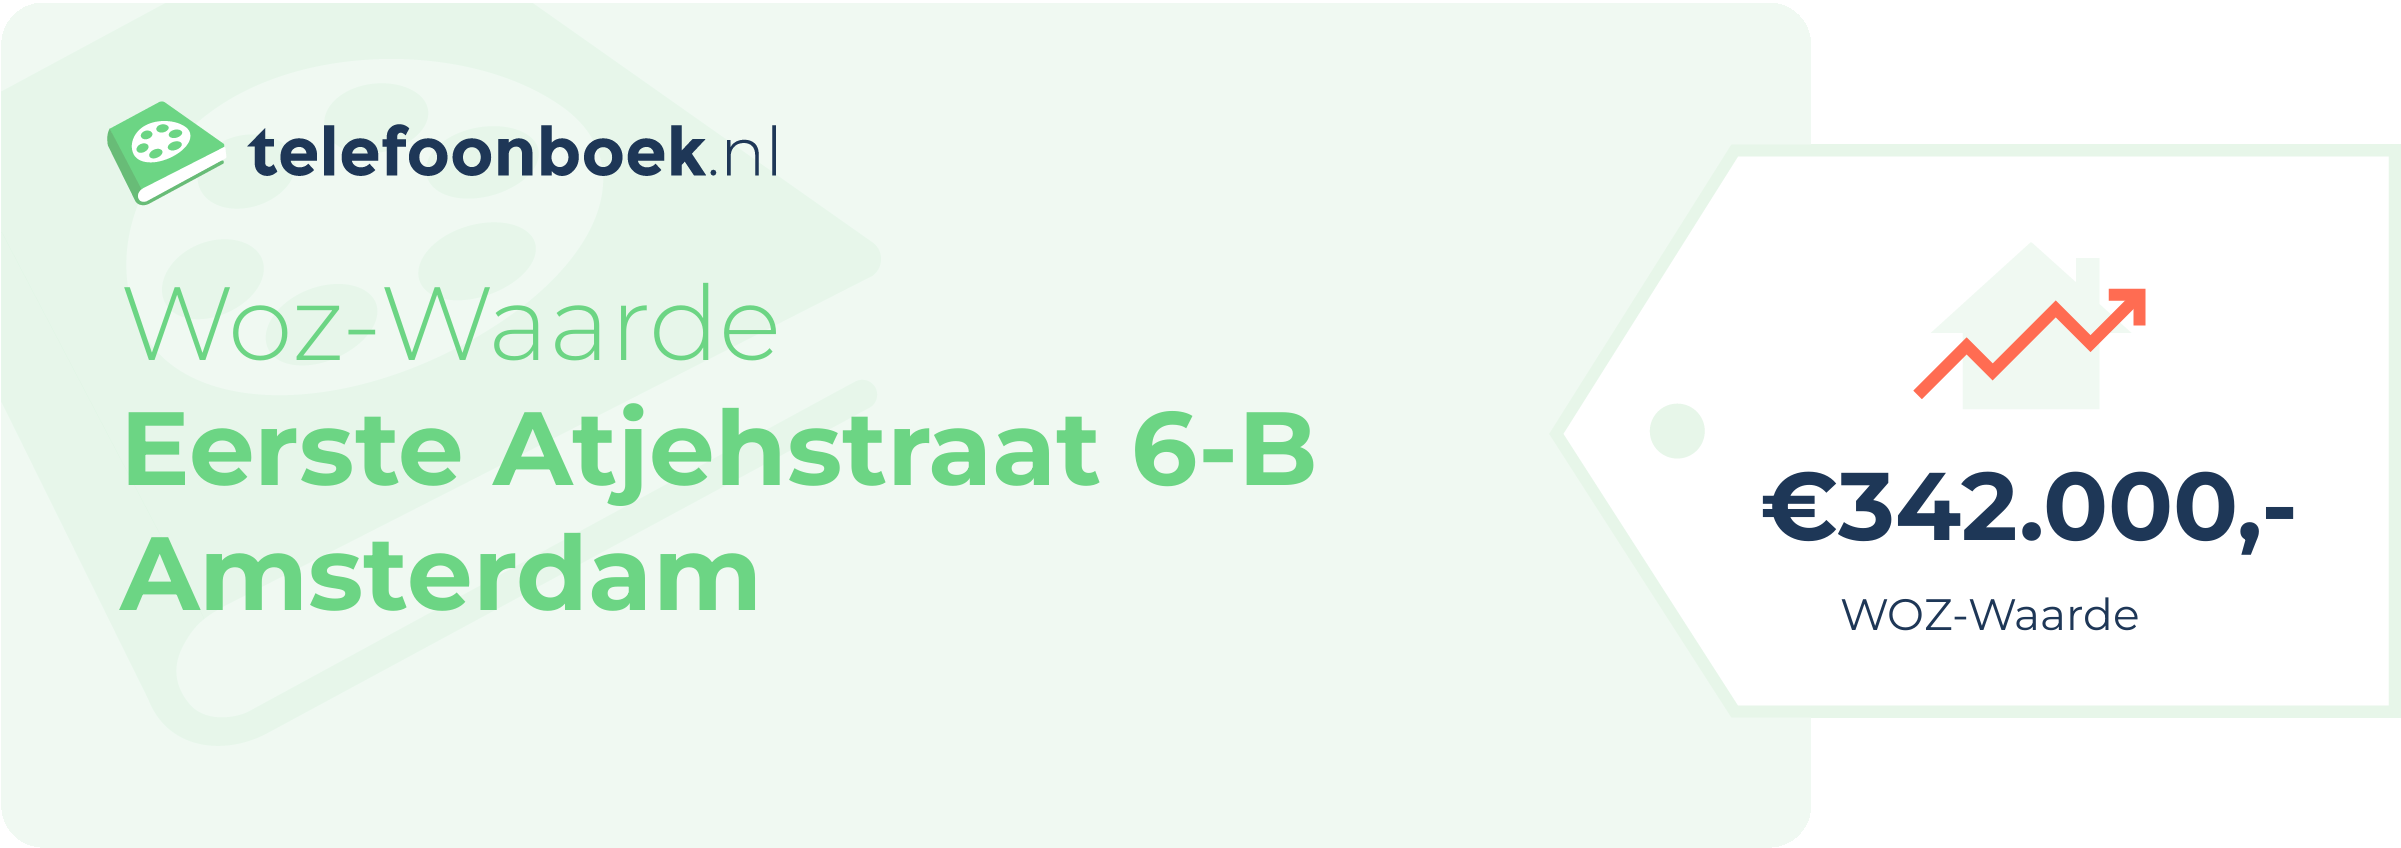 WOZ-waarde Eerste Atjehstraat 6-B Amsterdam